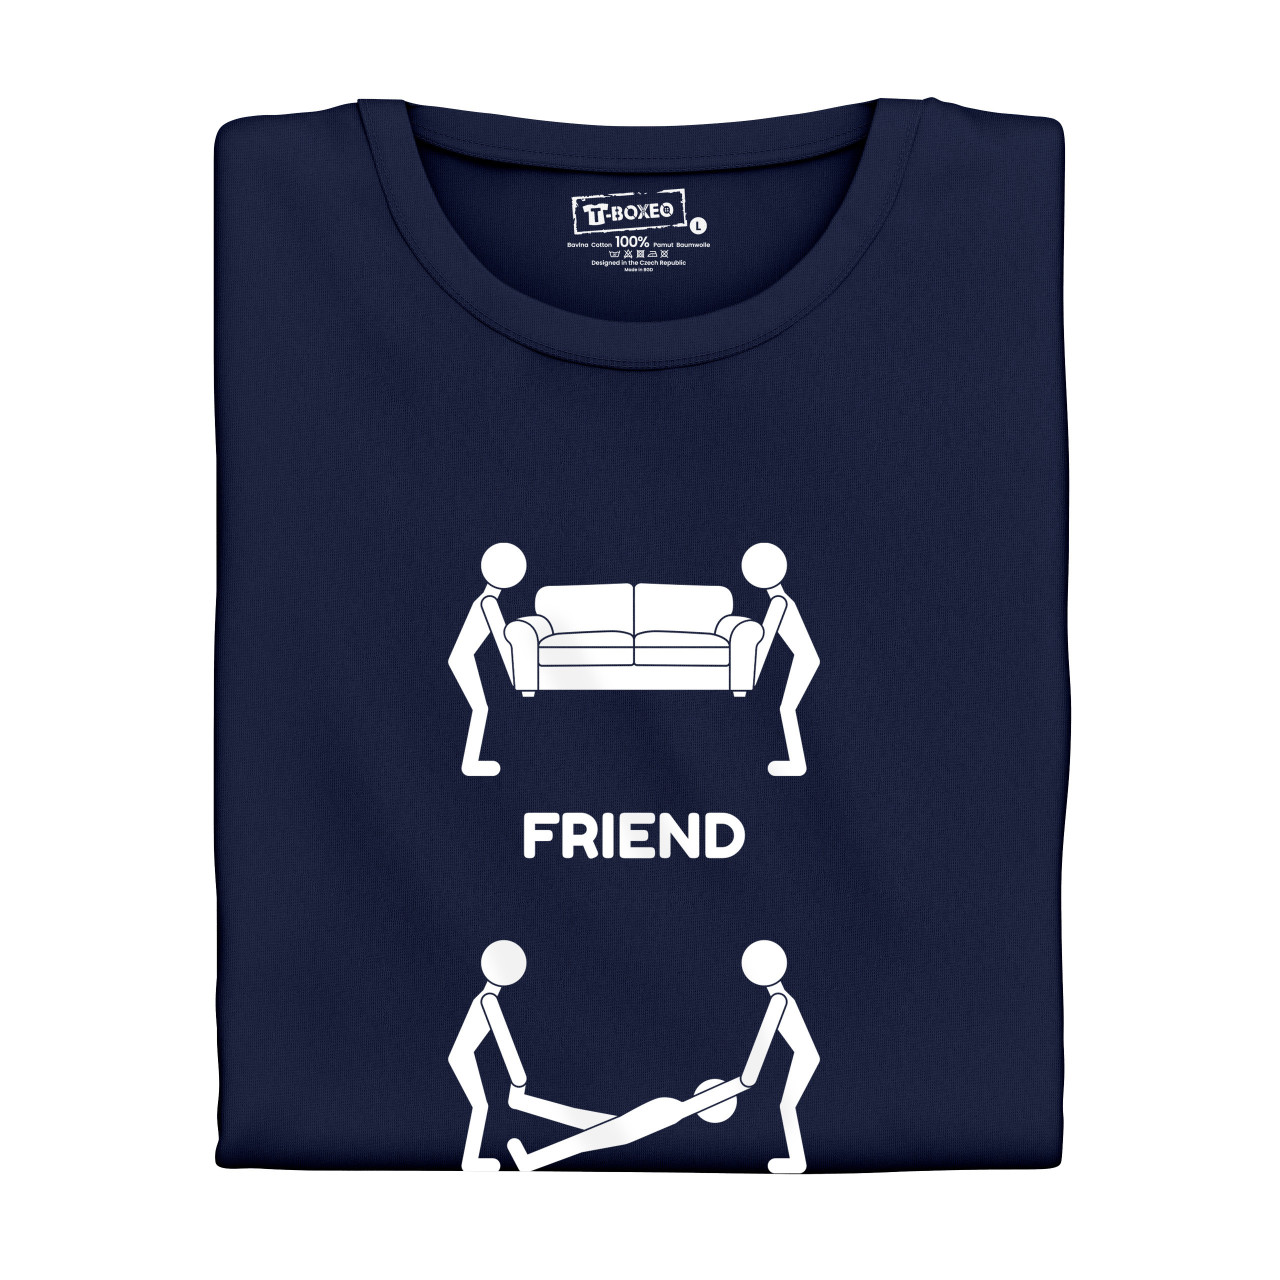 Pánské tričko s potiskem “Kdo je nejlepší kamarád”